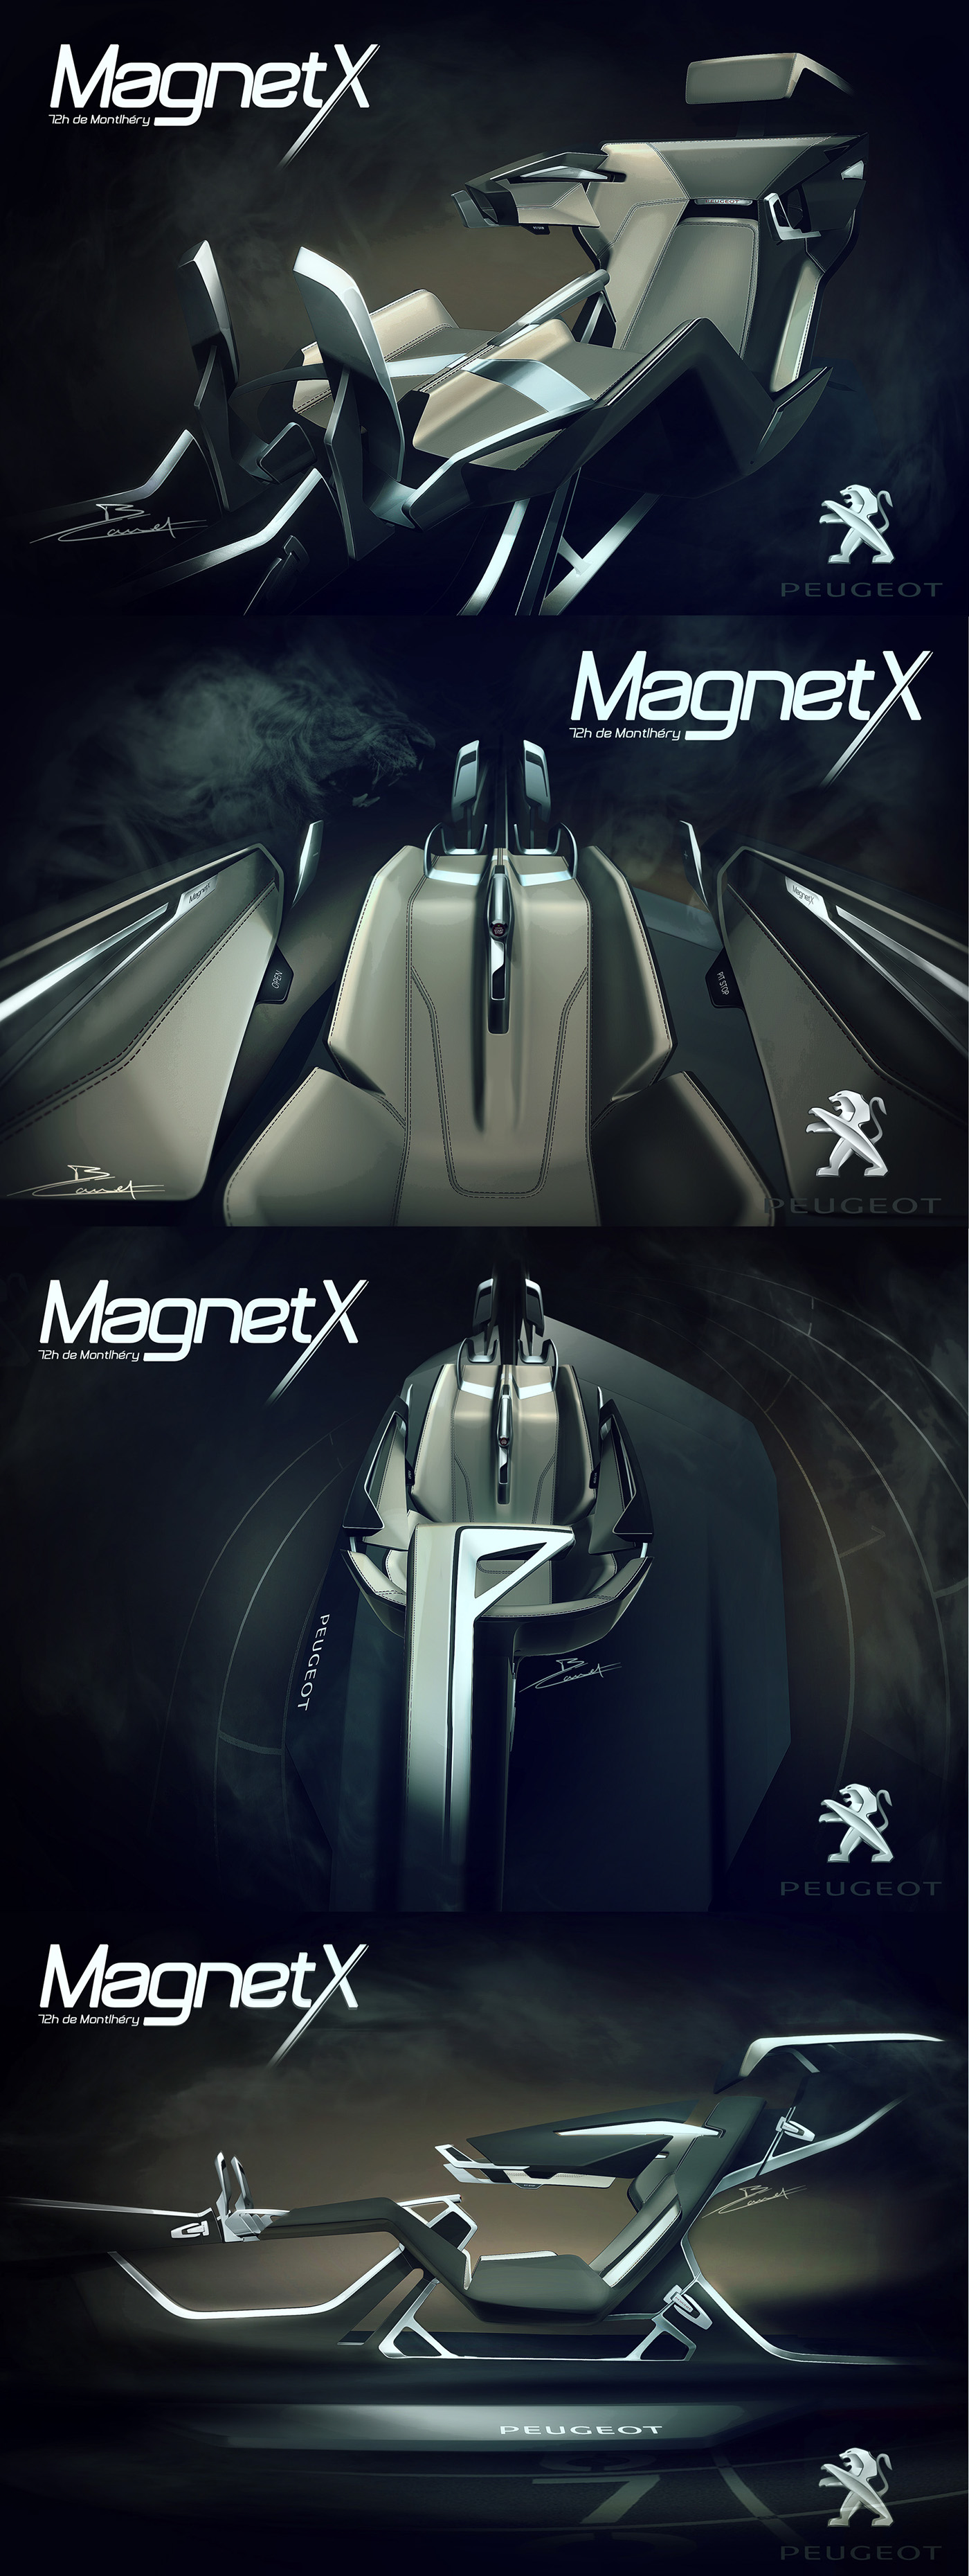 PEUGEOT Workshop ISD Sport Driving cockpit Magnet Plug concept design automotive   sketch Alias modeling